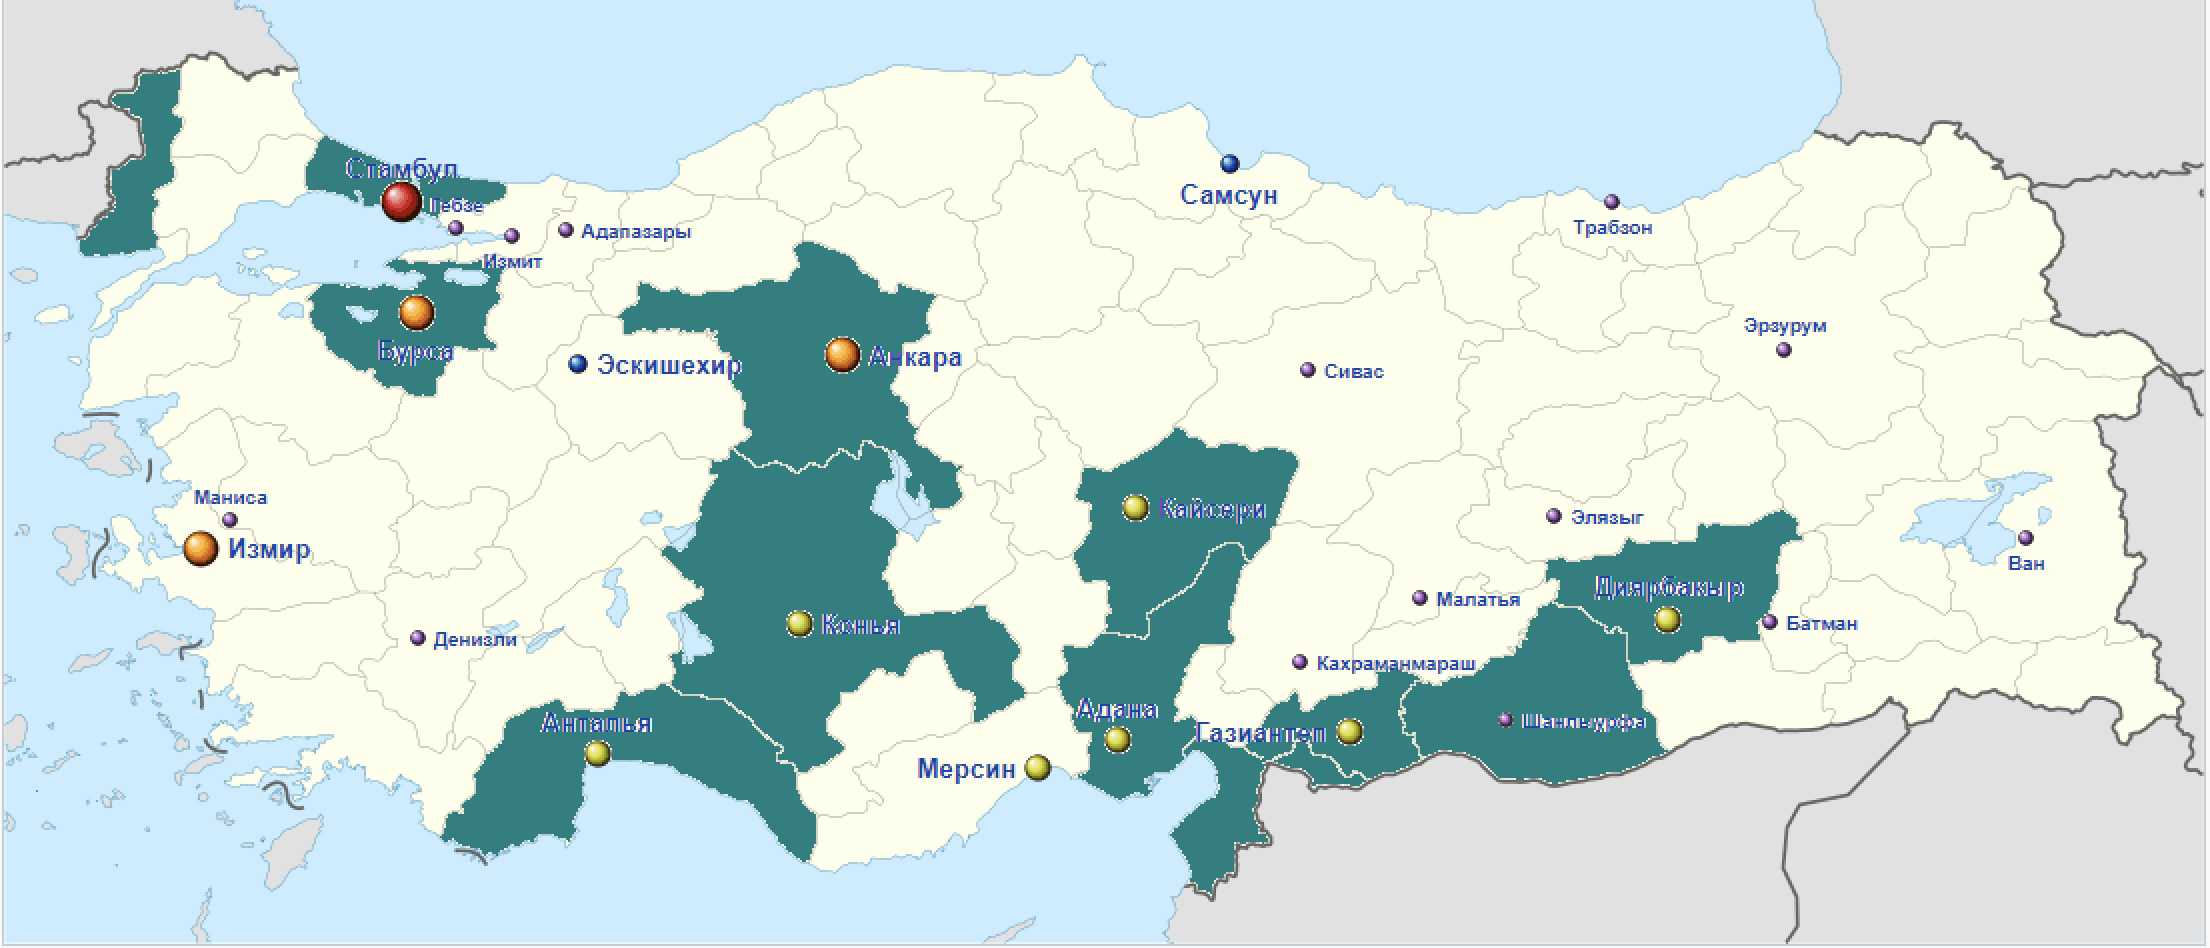 Провинции в Турции, где зафиксированы антисирийские протесты